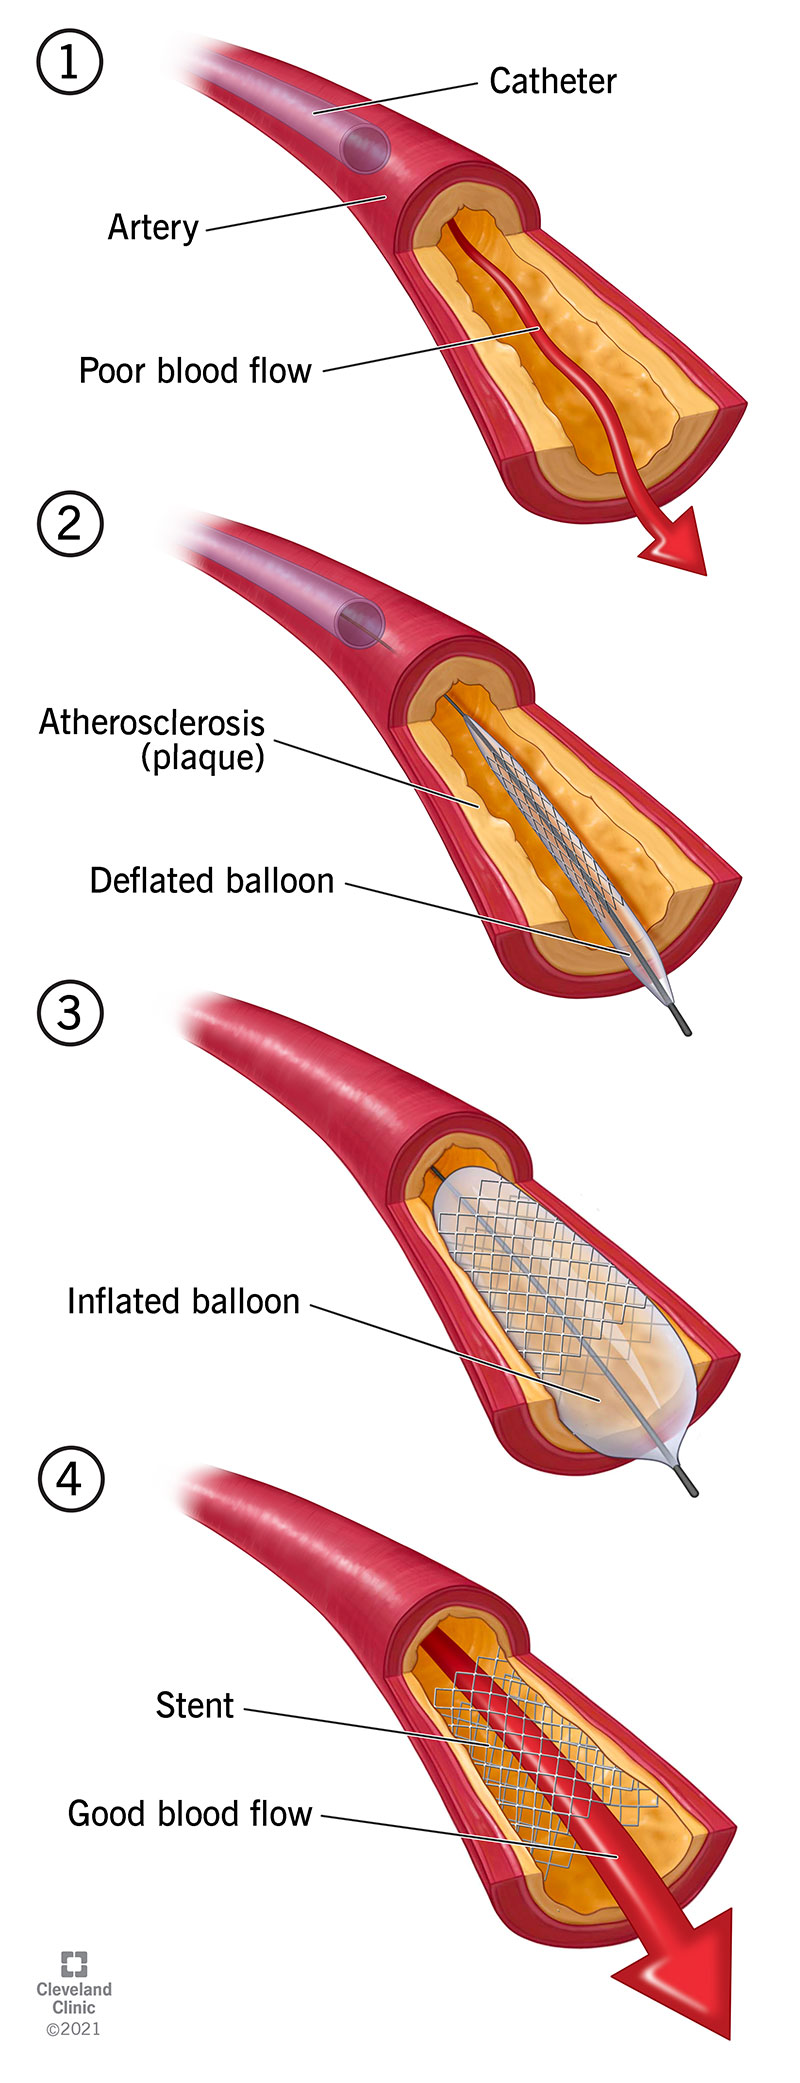 Un palloncino spinge la placca contro la parete dell'arteria.